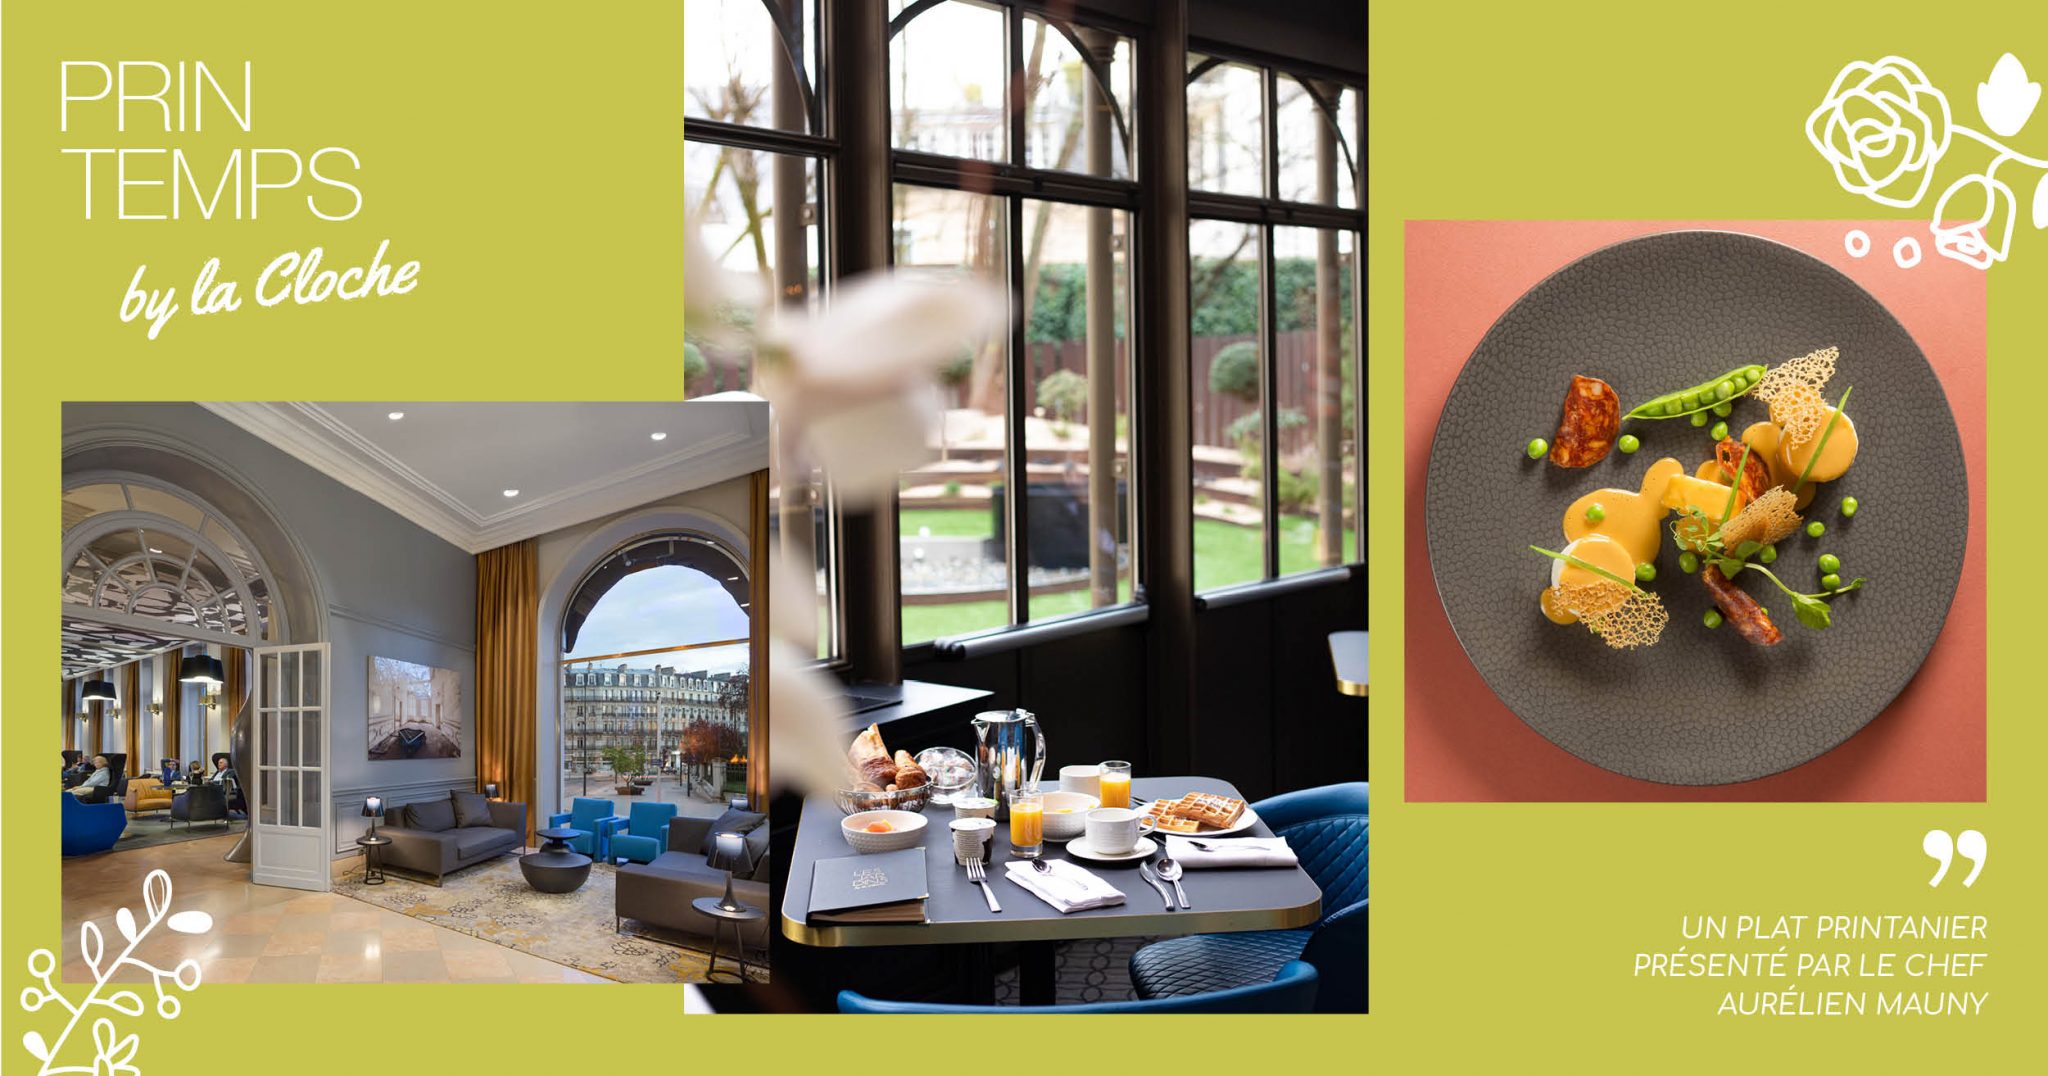 Superposition de photos qui annoncent le printemps, sur fond vert : le hall de l'hôtel, le restaurant, un plat.